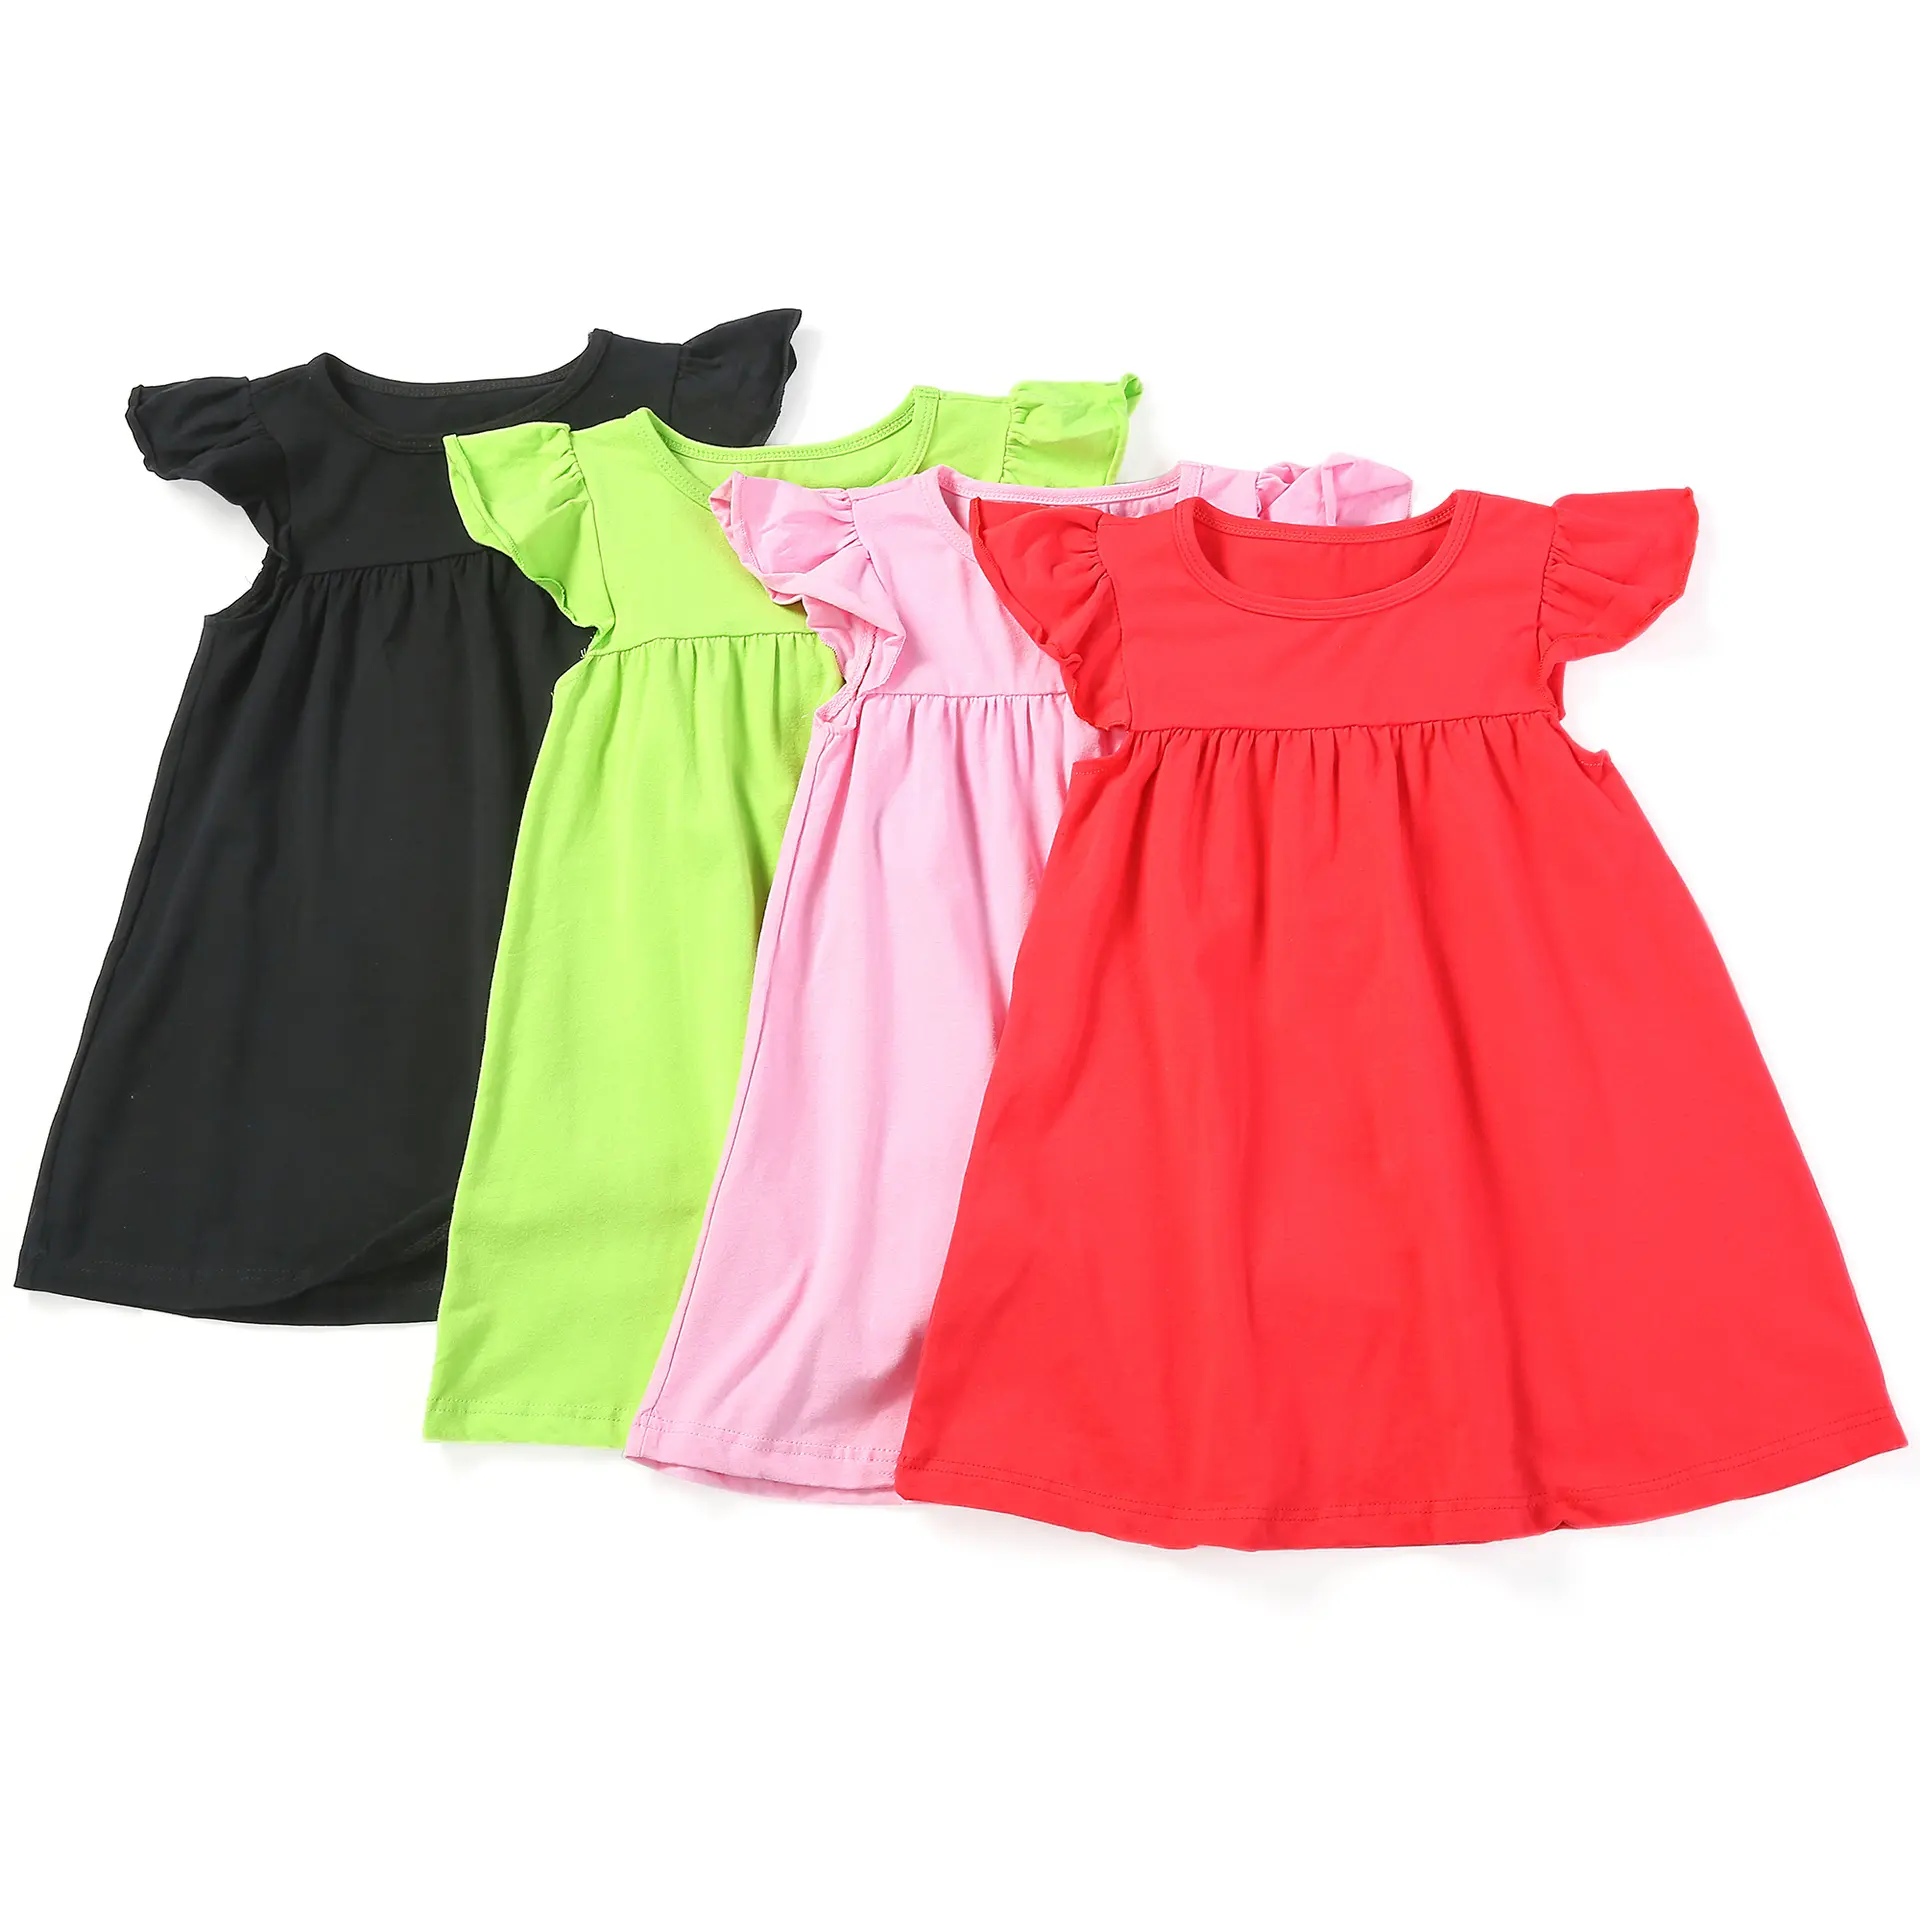 Butik pakaian anak perempuan, baju katun bayi rok Suspender Solid, baju anak perempuan kasual lengan Cerah musim panas